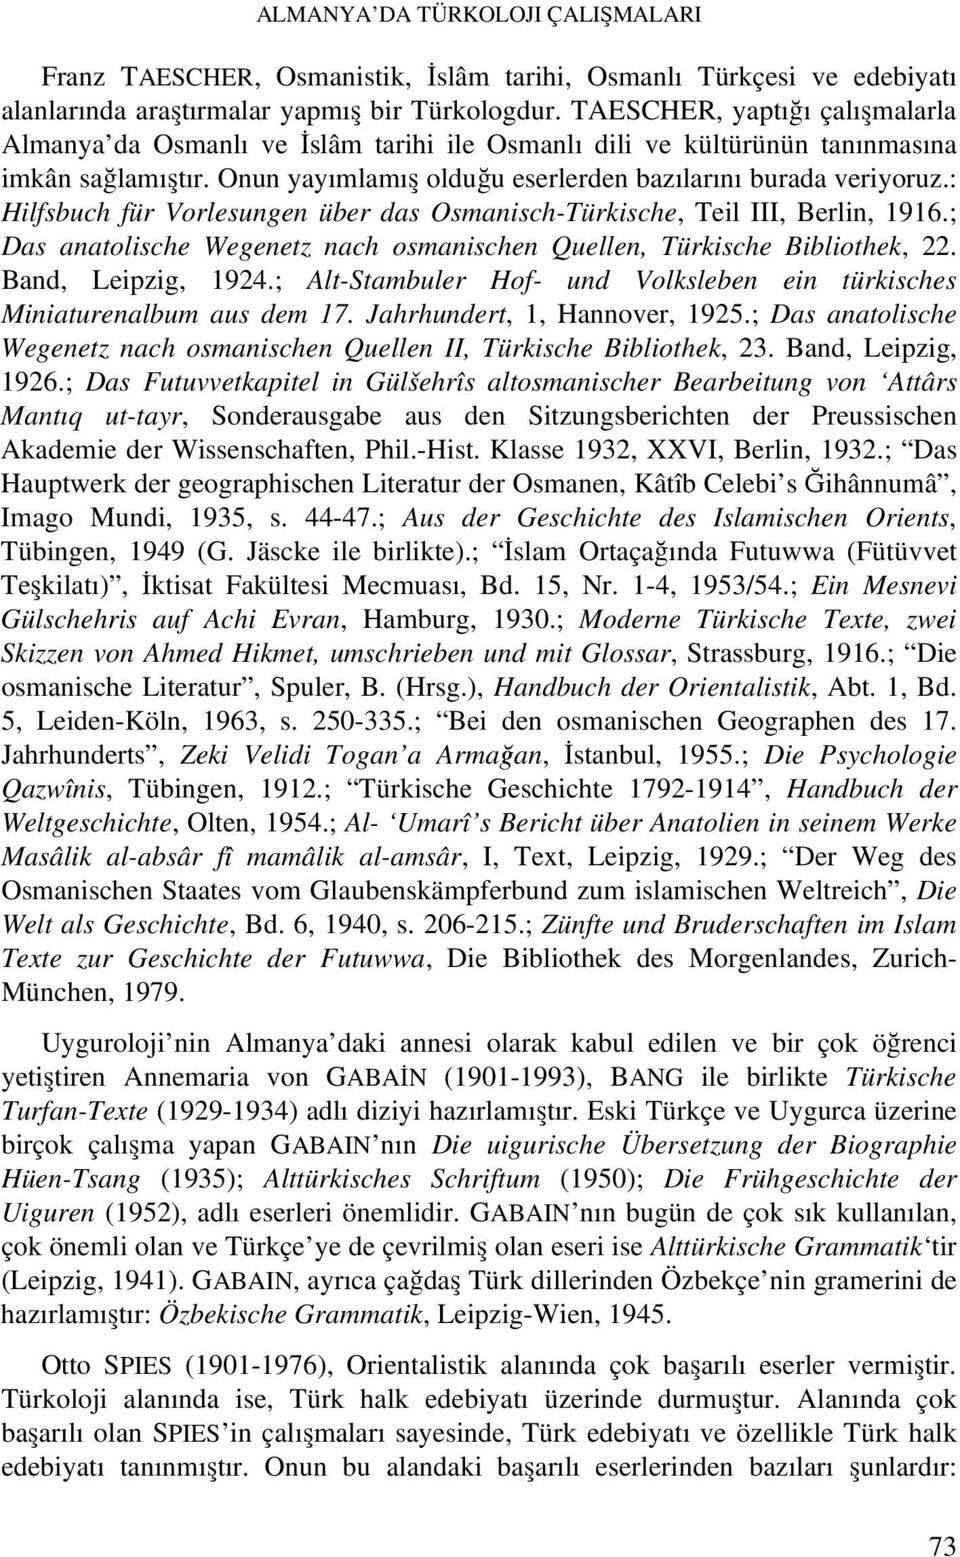 : Hilfsbuch für Vorlesungen über das Osmanisch-Türkische, Teil III, Berlin, 1916.; Das anatolische Wegenetz nach osmanischen Quellen, Türkische Bibliothek, 22. Band, Leipzig, 1924.